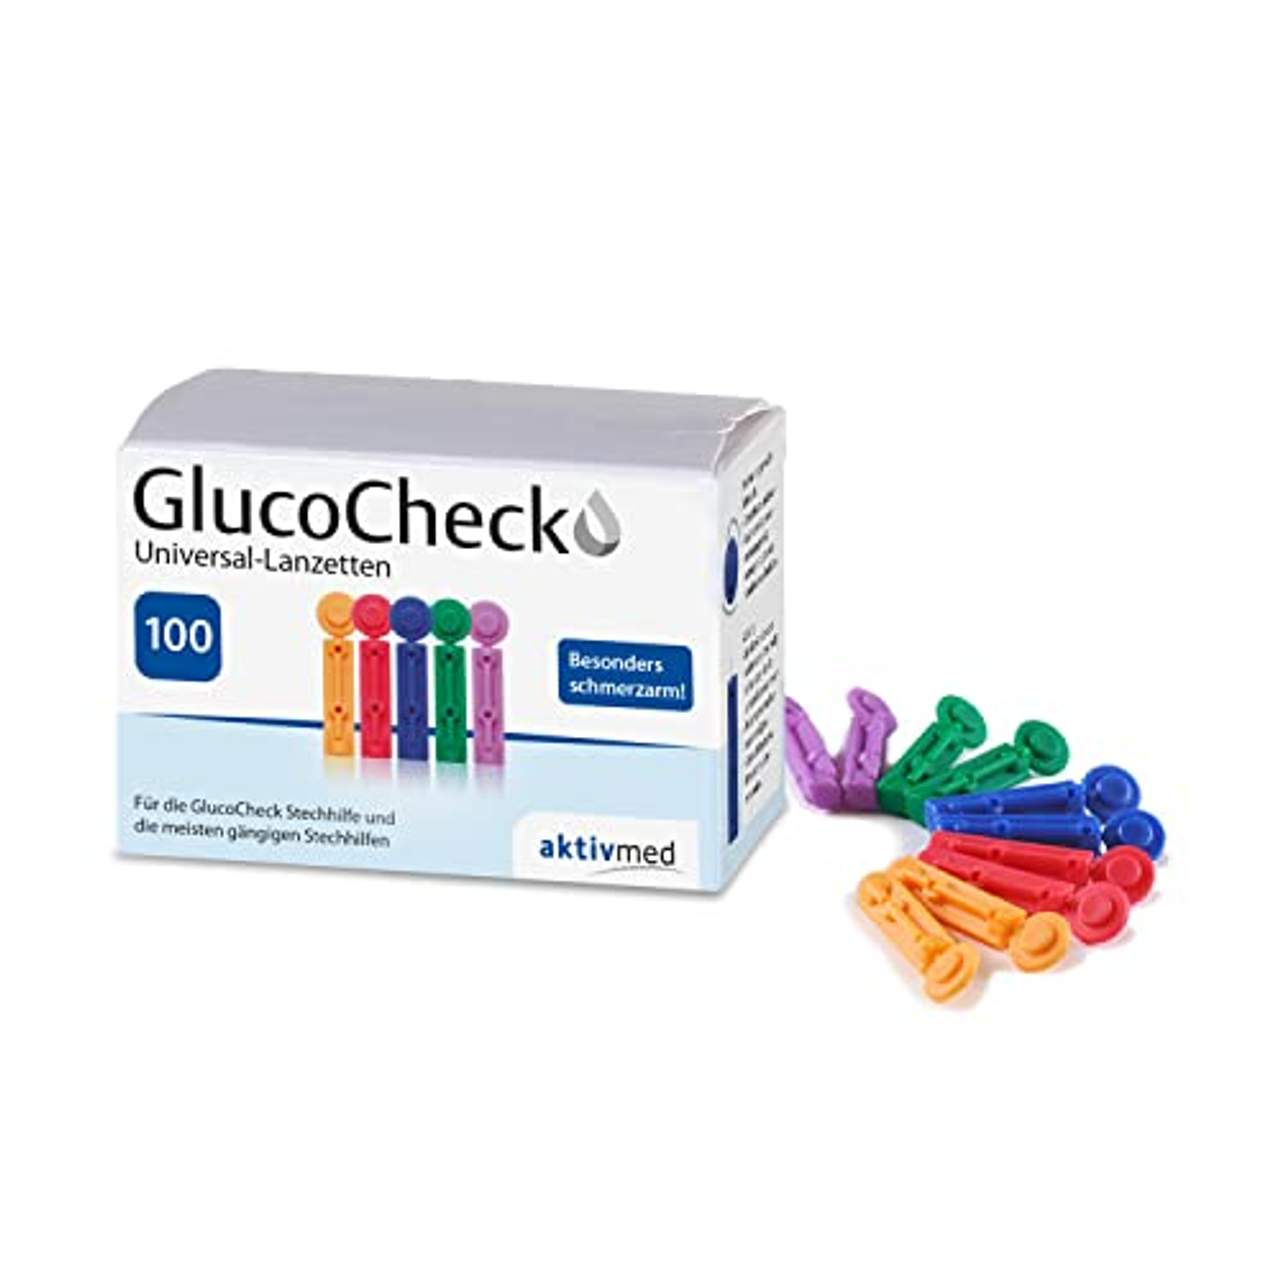 GlucoCheck Universal-Lanzetten von aktivmed